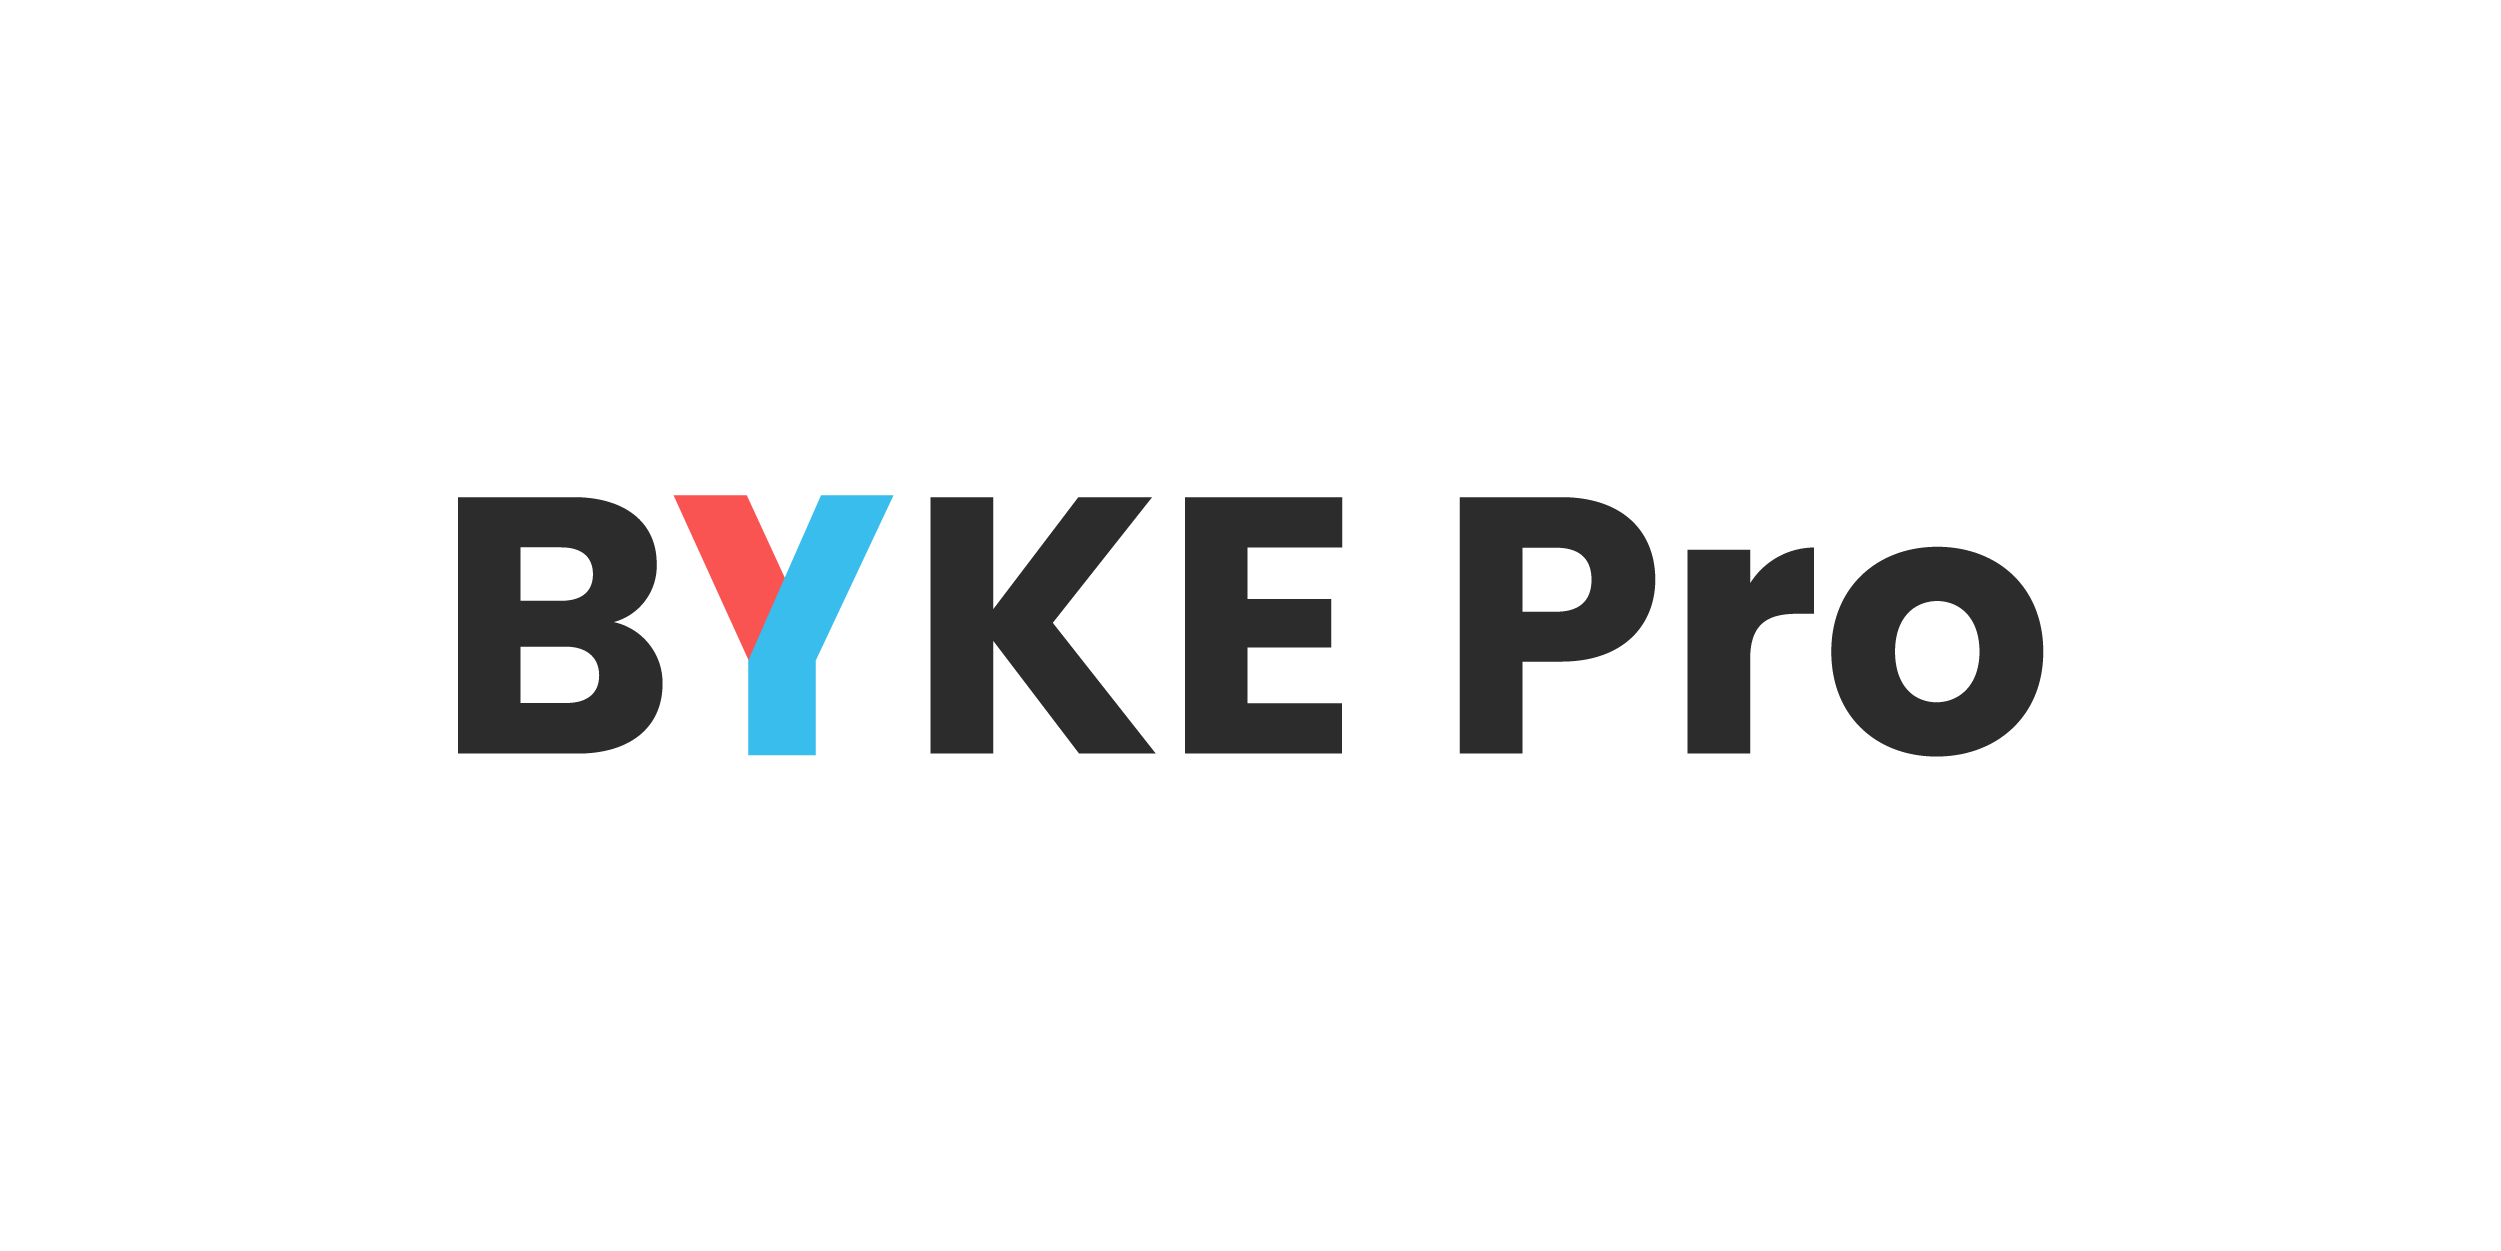 YAS product logo_BYKE Pro english and logotype